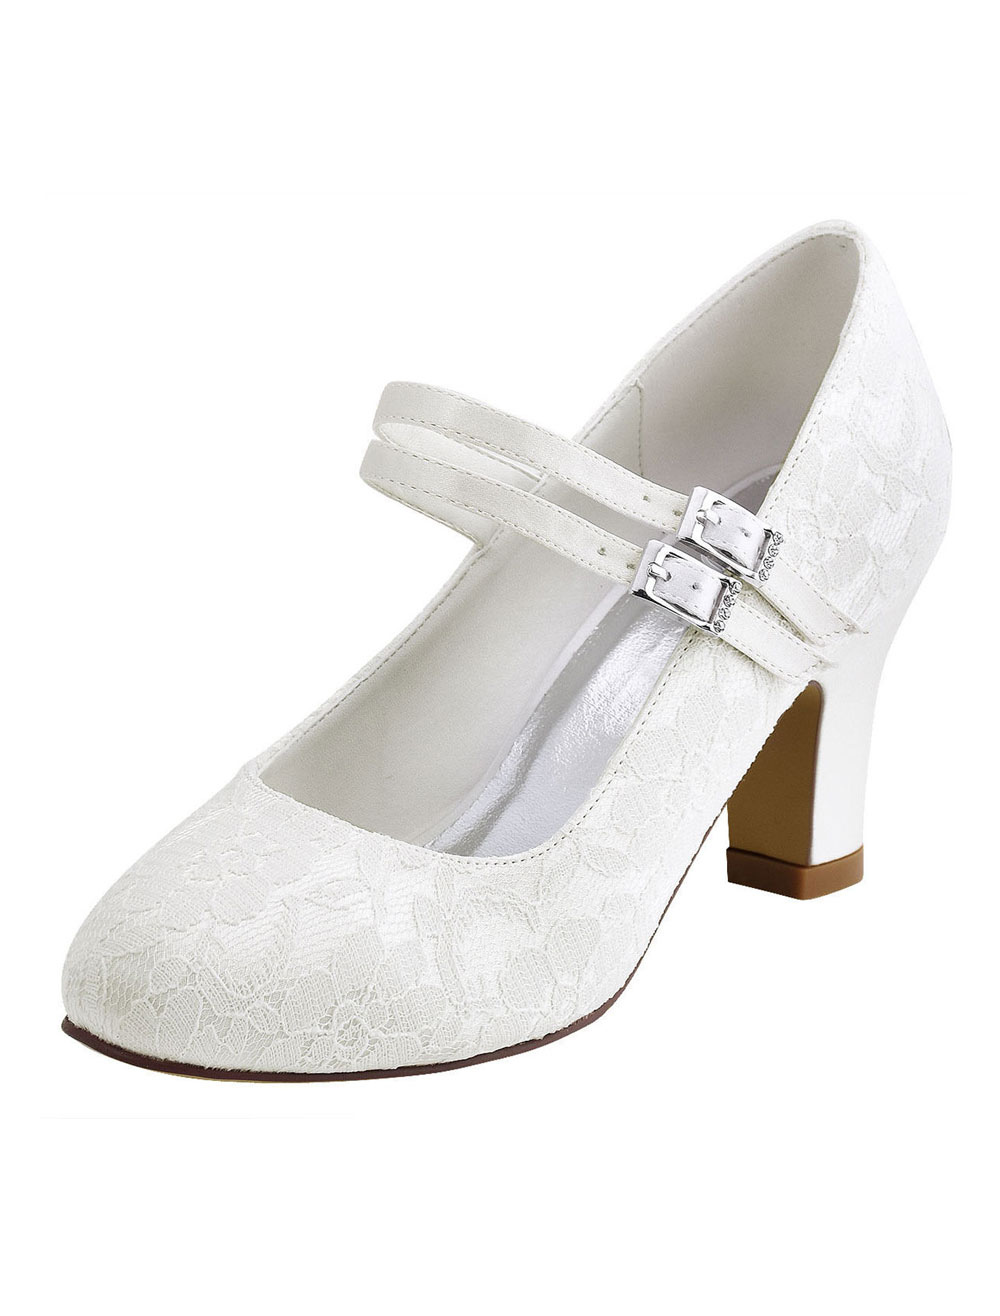 Női esküvői cipő két árnyalatban (A Ft ár tájékoztató jellegű)